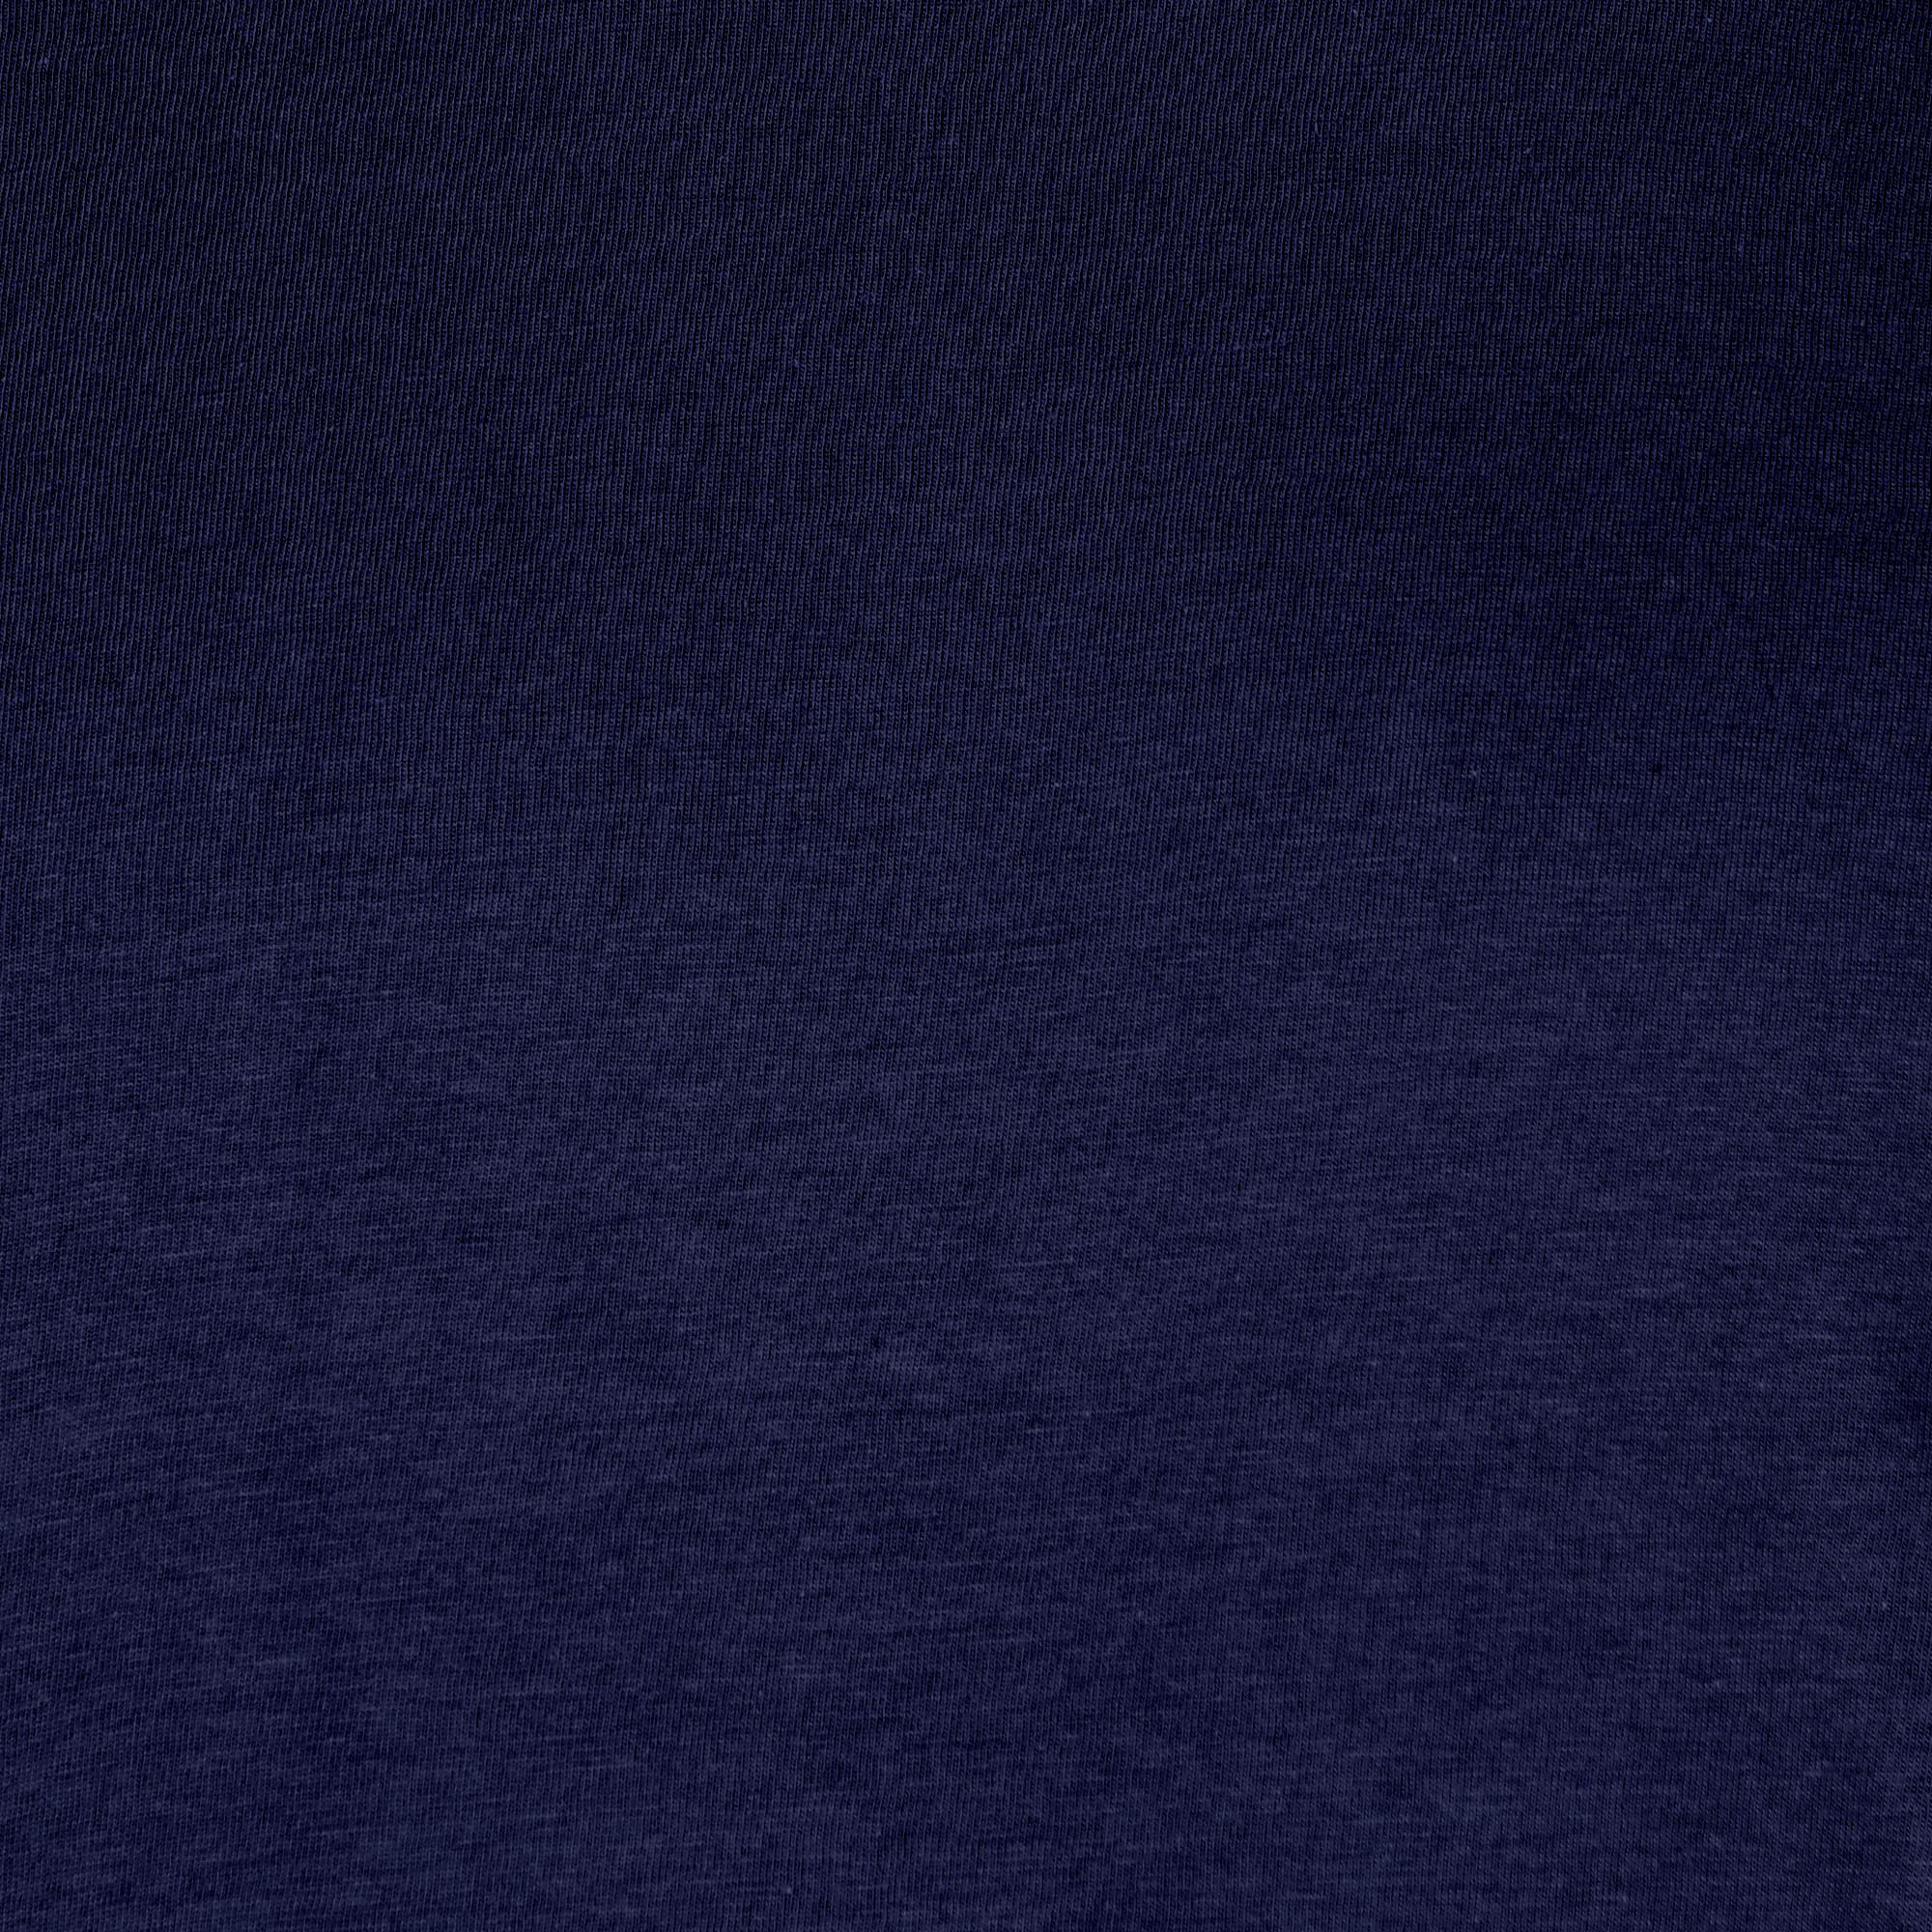 Мужская футболка Diva Teks синяя (DTD-05), цвет синий, размер 44-46 - фото 5